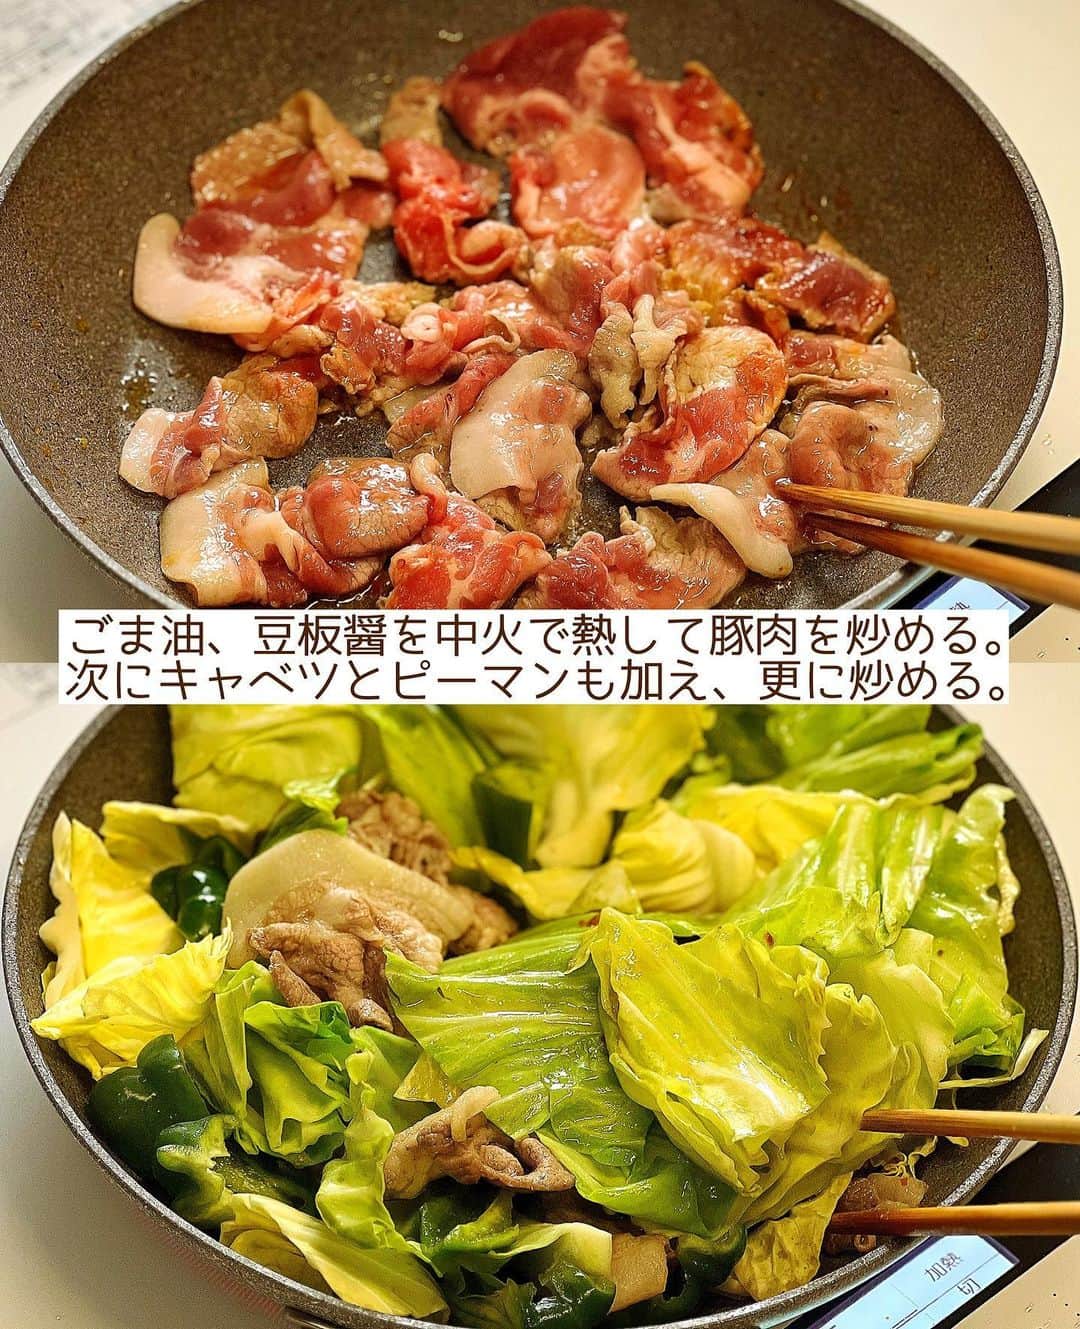 Mizuki【料理ブロガー・簡単レシピ】さんのインスタグラム写真 - (Mizuki【料理ブロガー・簡単レシピ】Instagram)「・一皿で大満足💕 ⁡ ［#レシピ ］ ーーーーーーーーーーーーー すぐでき！コクうま回鍋肉 ーーーーーーーーーーーーー ⁡ ⁡ ⁡ おはようございます☺️ ⁡ 今日ご紹介させていただくのは \ すぐでき！コクうま回鍋肉 / ⁡ 春キャベツの時期は特によく作る うちの定番おかずです♩ (普通のキャベツでもできます😋) ⁡ ジューシーな豚肉と甘いキャベツに 濃いめの味噌だれが相性抜群！！ フライパンひとつで あっという間にできますよ〜💕 ⁡ とってもごはんに合うので よかったらお試し下さいね✨ ⁡ ＊豚薄切り肉は、肩ロース、バラ こま、などなんでもOK♩ (おすすめは肩ロースです✨) ⁡ ⁡ ⁡ 💬💬💬 謎の暮らしアカウント作りました🏠 変なライブはこっちでやってます🤫 →(@mizuki_kurashi ) ⁡ ⁡ 【簡単・時短・節約レシピ更新中🔻】 @mizuki_31cafe ⁡ ⁡ ⁡ ＿＿＿＿＿＿＿＿＿＿＿＿＿＿＿＿＿＿＿ 【2人分】 豚薄切り肉...180g キャベツ...1/5個(200g) ピーマン...2個 ごま油...小2 豆板醤...小1/2 ●水・酒...各大1.5 ●味噌...大1 ●砂糖・オイスターソース...各大1/2 ●片栗粉...小1/4 ●にんにくチューブ...1cm ⁡ 1.キャベツはザク切り、ピーマンは一口大に切る。●は合わせておく。 2.フライパンにごま油と豆板醤を入れて中火で熱し、豚肉を炒める。豚肉の色が変わったらキャベツとピーマンも加えて更に炒める。 3.野菜がしんなりしてきたら●を加えて煮からめる。 ￣￣￣￣￣￣￣￣￣￣￣￣￣￣￣￣￣￣￣ ⁡ ⁡ 《ポイント》 ♦︎豚肉は薄切り肉ならなんでもOK！個人的に一押しは肩ロース薄切り肉(又は切り落とし肉)です♩やわらかく脂のバランスも最高！ ♦︎キャベツは大きめに切り、炒め過ぎず歯応えを残すと◎ ♦︎合わせ調味料は加える前によく混ぜて下さい♩ ♦︎豆板醤を抜けば辛くないのでお子さんも食べられます♩その場合大人は仕上げにラー油をかけても♩ ⁡ ⁡ ⁡ ⁡ ⁡ 𖤣𖥧𖥣𖡡𖥧𖤣✨ 愛用している調理器具や器などは #楽天ROOMに載せてます ‎𐩢𐩺 (ハイライトから飛べます🛍) ⁡ ⁡ ⁡ ⁡ ⁡ ⁡ 🔶全国の書店・ネット書店で発売中🔶 ⁡ ✼••┈┈┈┈┈••✼••┈┈┈┈┈••✼ 今日のごはんこれに決まり！ ‎𓊆#Mizukiのレシピノート 500品𓊇 ✼••┈┈┈┈┈••✼••┈┈┈┈┈••✼ ⁡ ˗ˏˋ おかげさまで25万部突破 ˎˊ˗ 料理レシピ本大賞準大賞を受賞しました🙇‍♀️ ⁡ 6000点の中からレシピを厳選し まさかの【500レシピ掲載】❣️ 肉や魚のメインおかずはもちろん 副菜、丼、麺、スープ、お菓子 ハレの日のレシピ、鍋のレシピまで 全てこの一冊で完結𓌉◯𓇋✨ ⁡ ⁡ ⁡ ⁡ ✼••┈┈┈••✼••┈┈┈••✼ Mizukiのカンタン手作り   𓊆 #3時のおやつ 𓊇 ✼••┈┈┈••✼••┈┈┈••✼ ⁡ 『3分クッキング』で連載中の 「Mizukiのカンタン手作り」 ‎4年分のおやつが1冊になりました！ ❝オーブンなしで❞ 身近な材料と道具でできる 簡単、手軽なおやつを80品🍪 ⁡ ⁡ ⁡ ⁡ ⁡ ⁡ #コクうま回鍋肉m #回鍋肉 #ホイコーロー #キャベツレシピ #キャベツ #豚肉 #ピーマンレシピ #ピーマン #節約料理 #簡単料理  #時短料理 #料理 #mizukiレシピ  #アルモンデ #時短レシピ #節約レシピ #簡単レシピ」5月18日 6時27分 - mizuki_31cafe